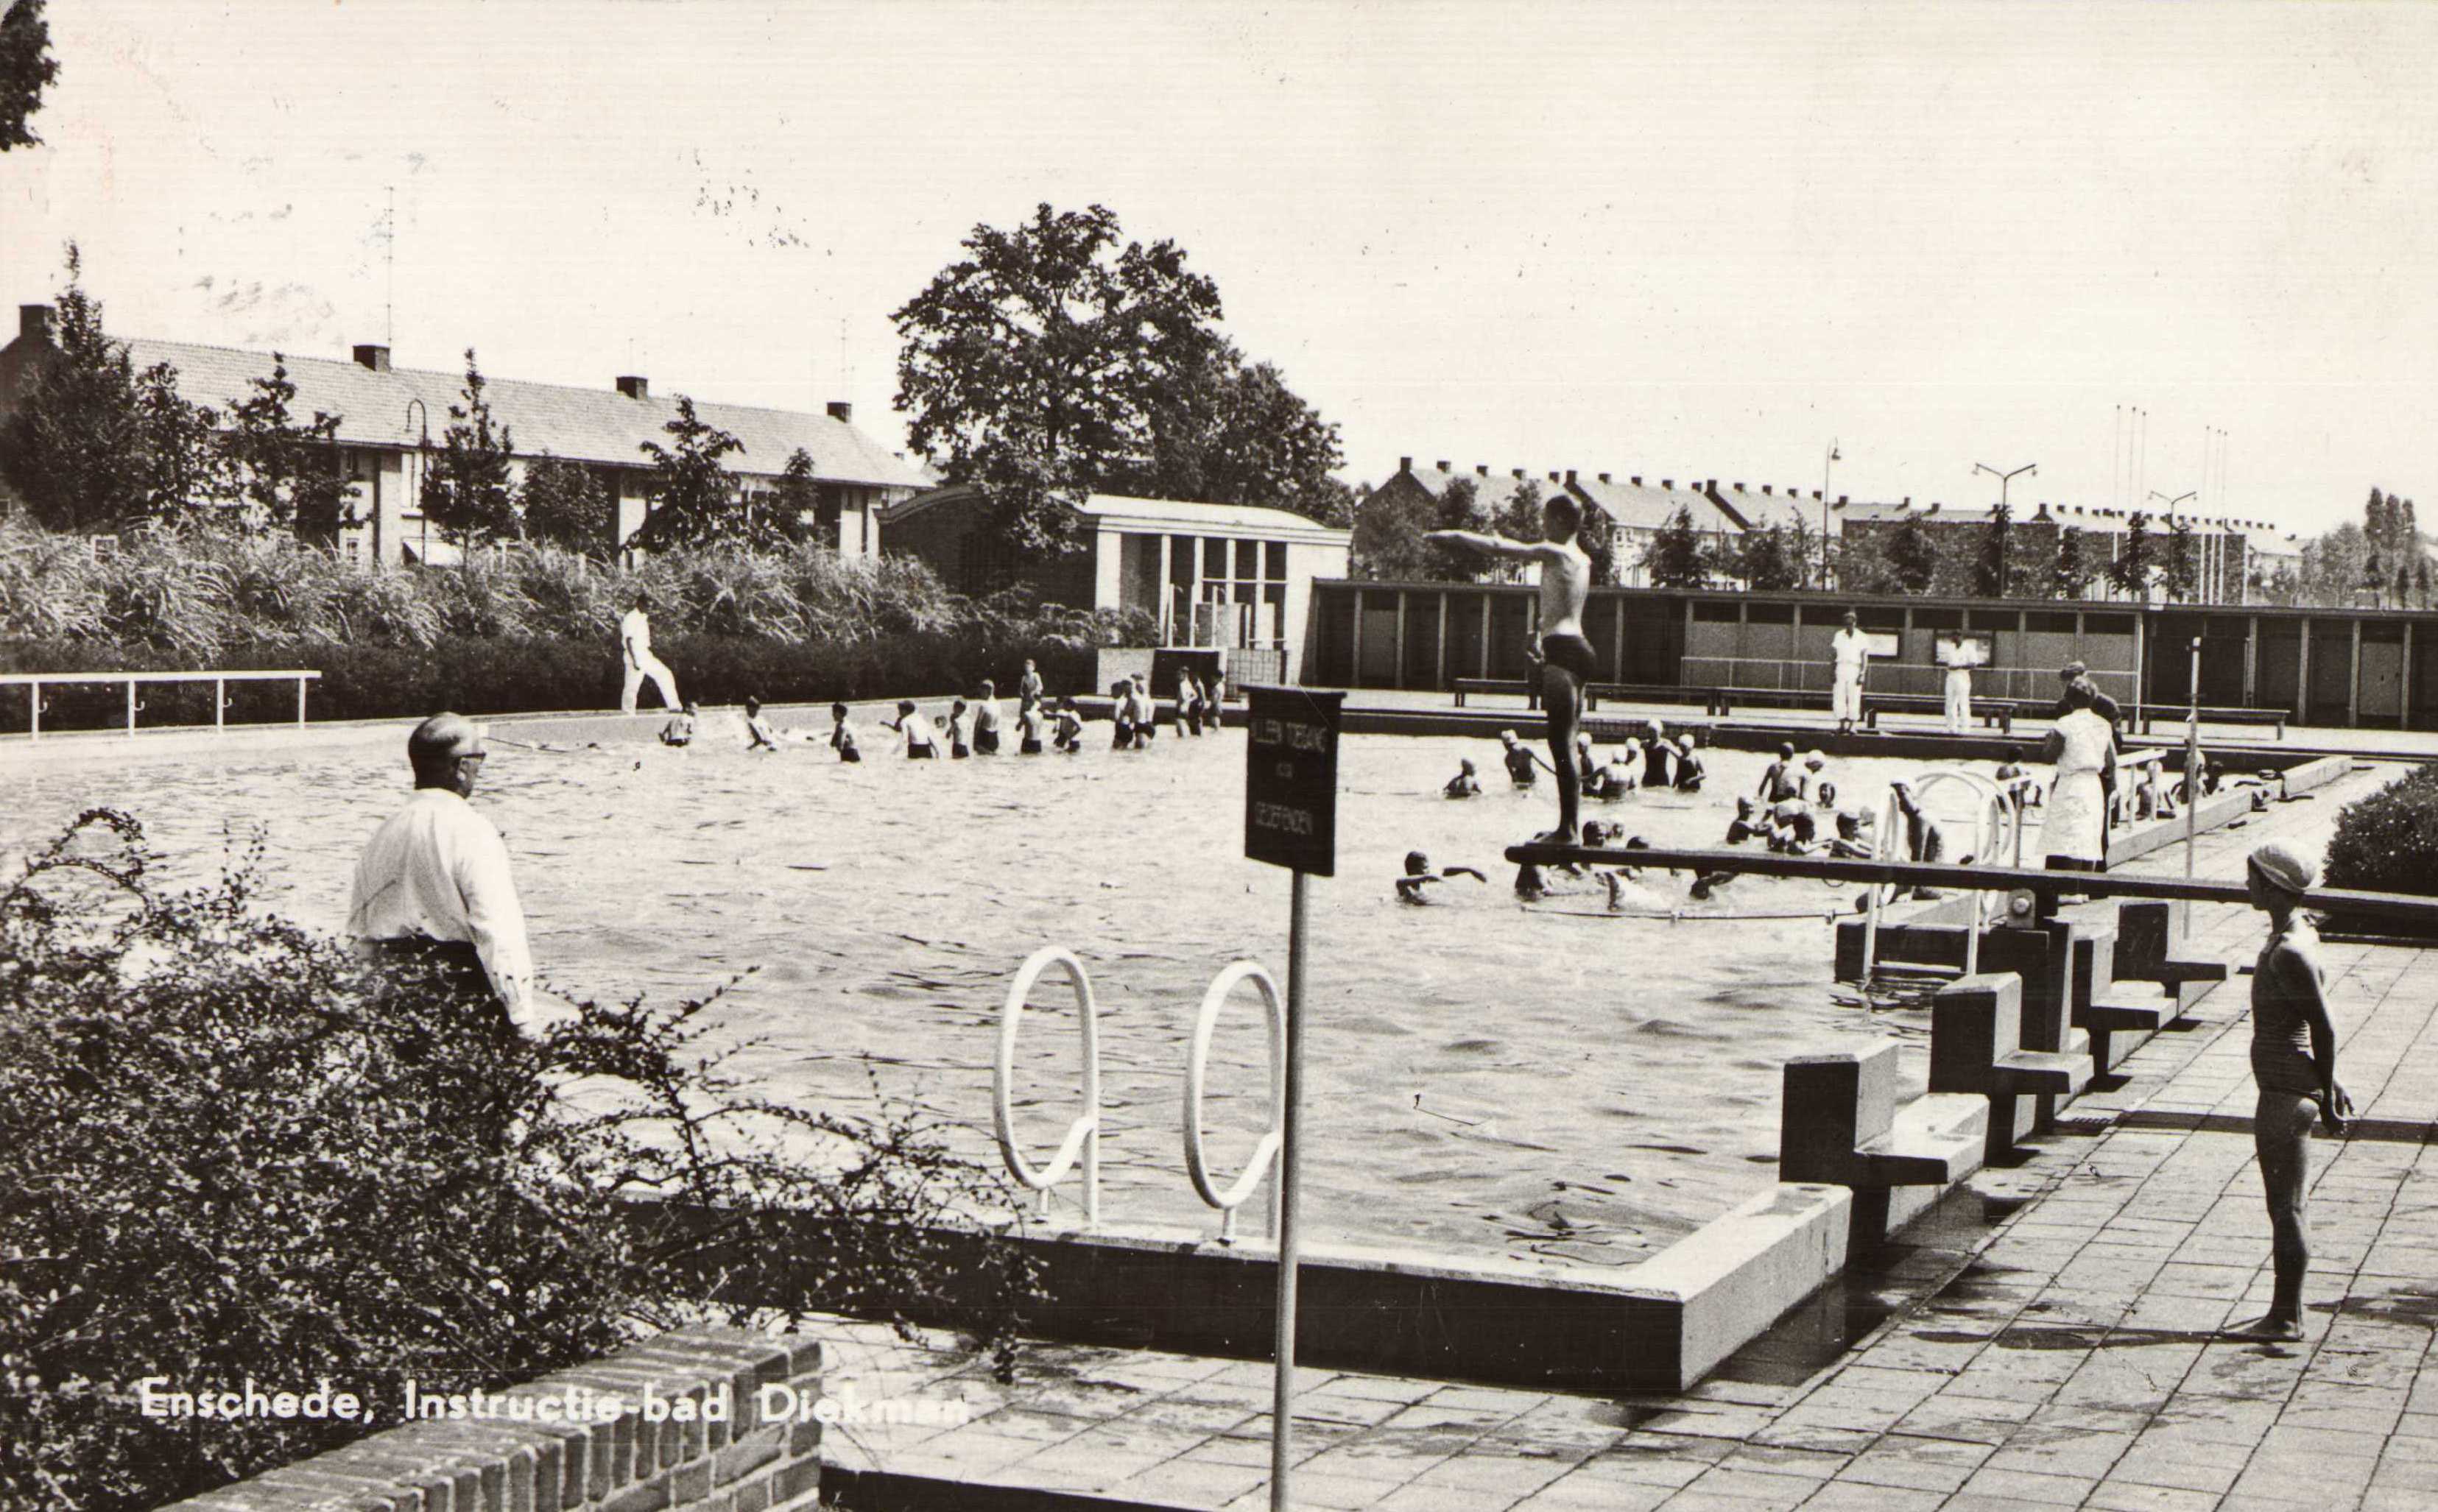 Zwembad-diekman-diep-1962-d8366bd7.jpg